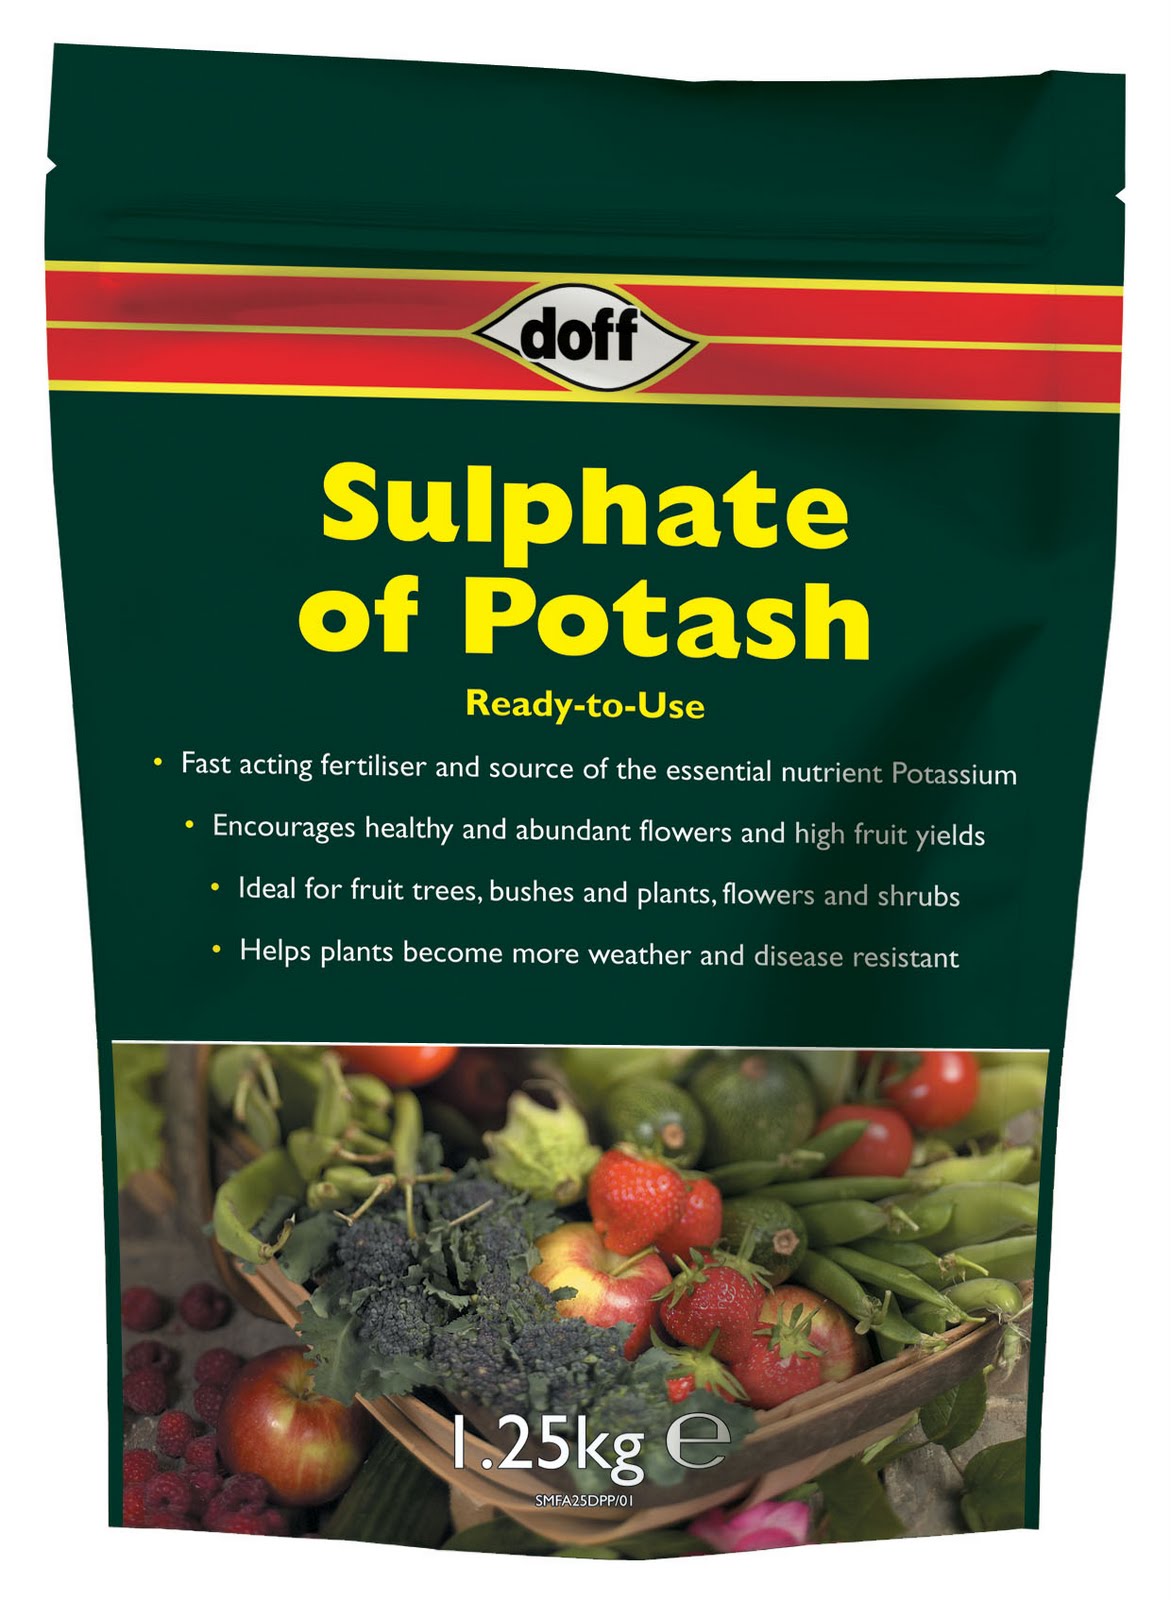 When should potash be used as a fertilizer?